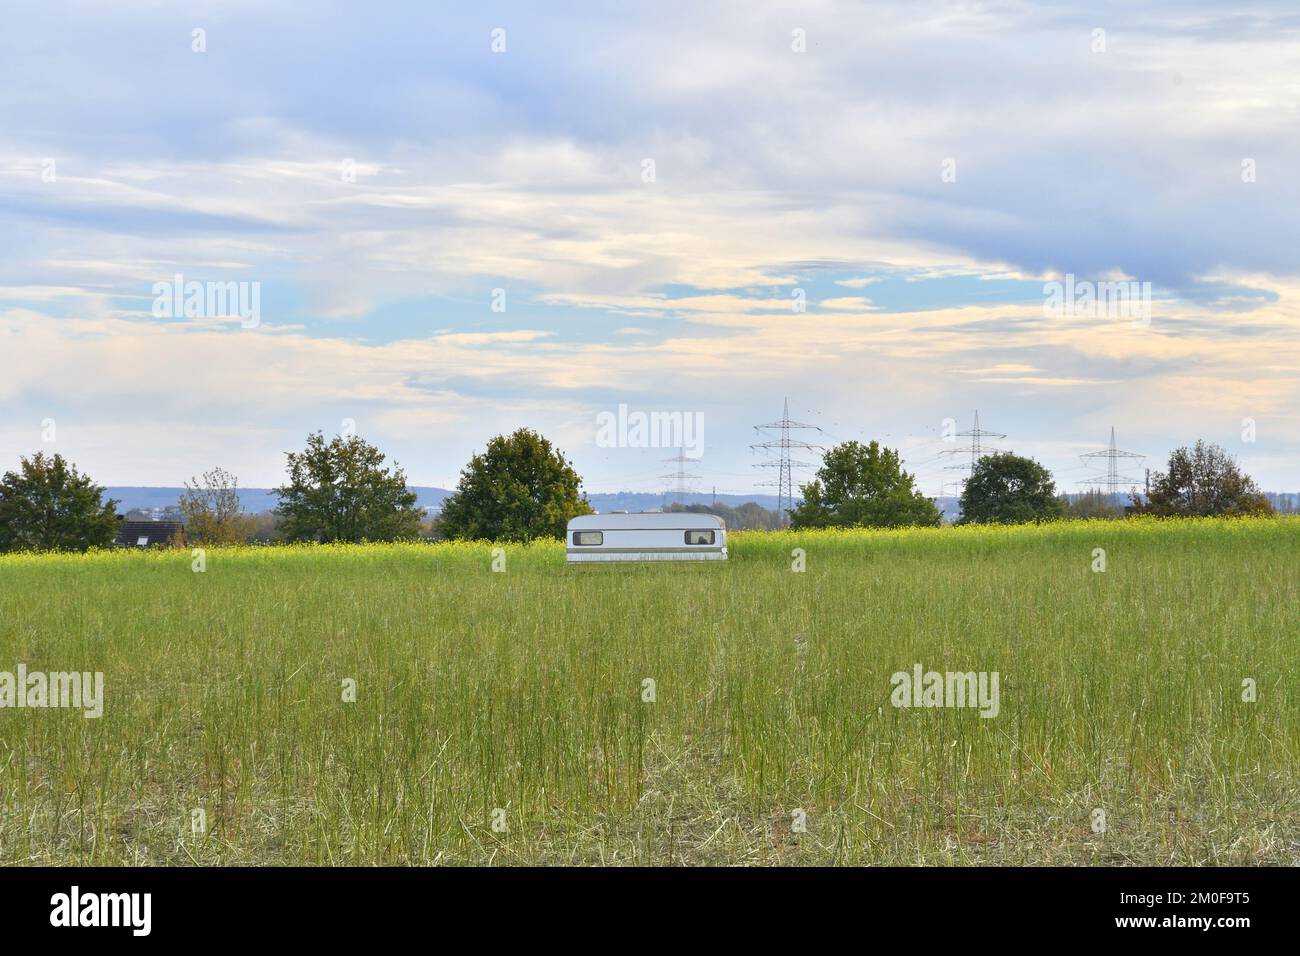 Charlock, moutarde de campagne, moutarde de maïs (Sinapis arvensis), caravane sur un champ de moutarde mangé par des moutons, Allemagne, Rhénanie-du-Nord-Westphalie Banque D'Images